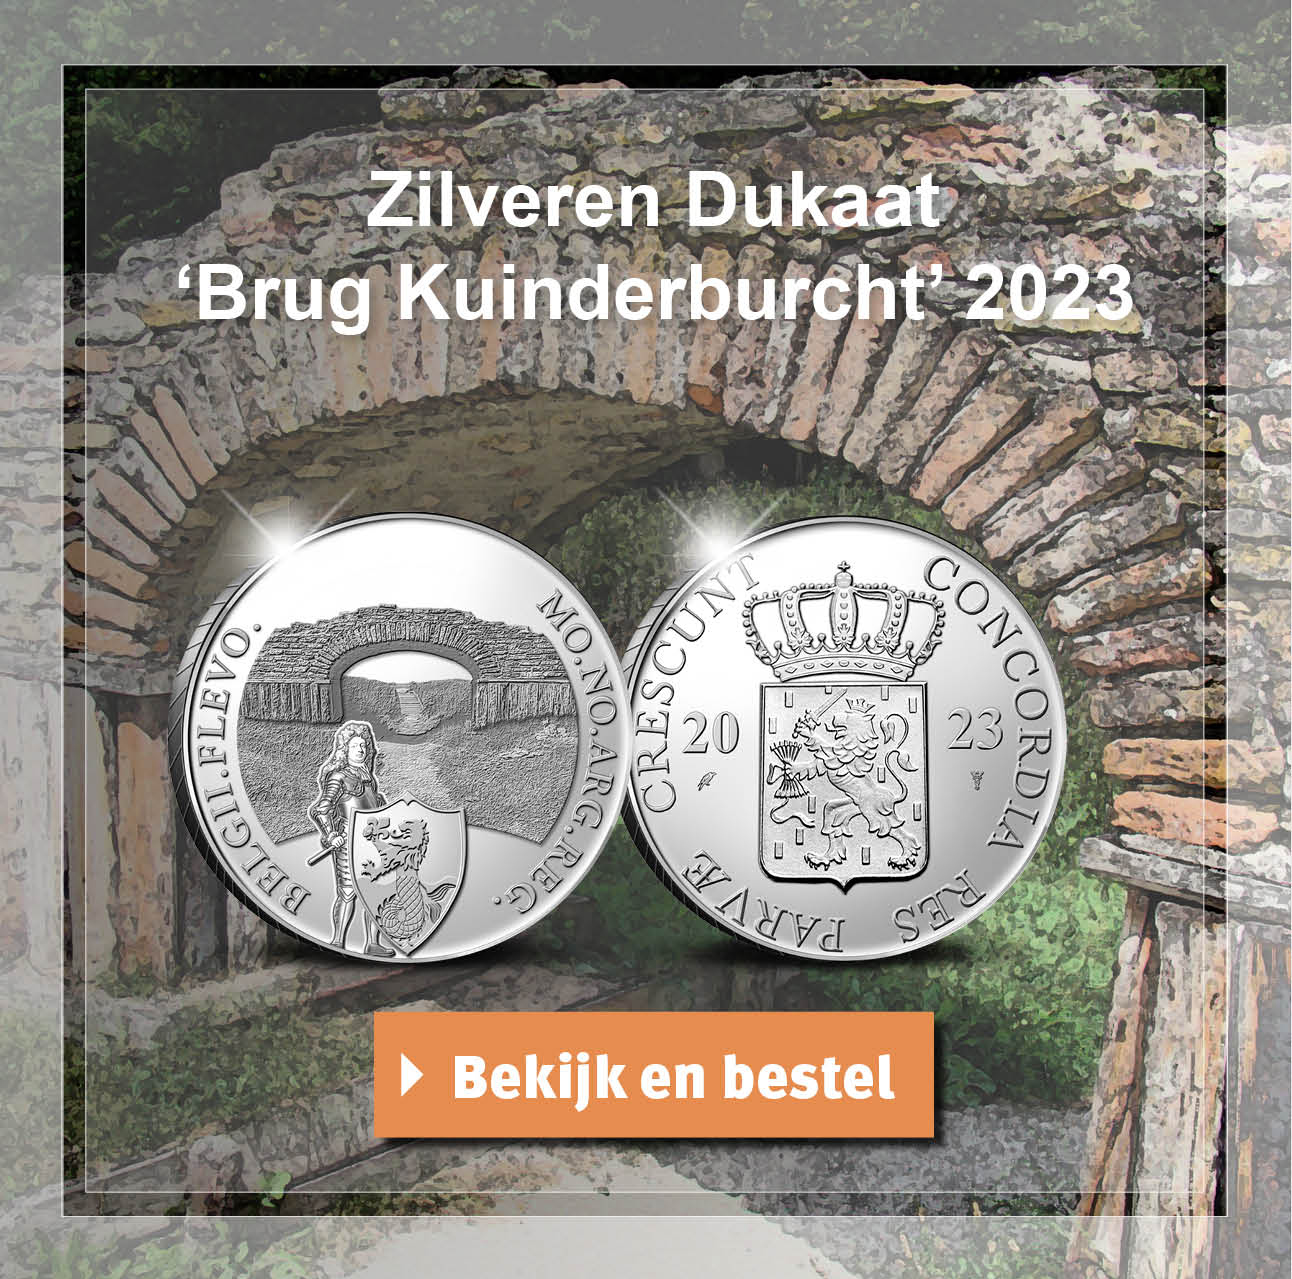 Bekijk en bestel: Zilver Dukaat Brug Kuinderburcht 2023